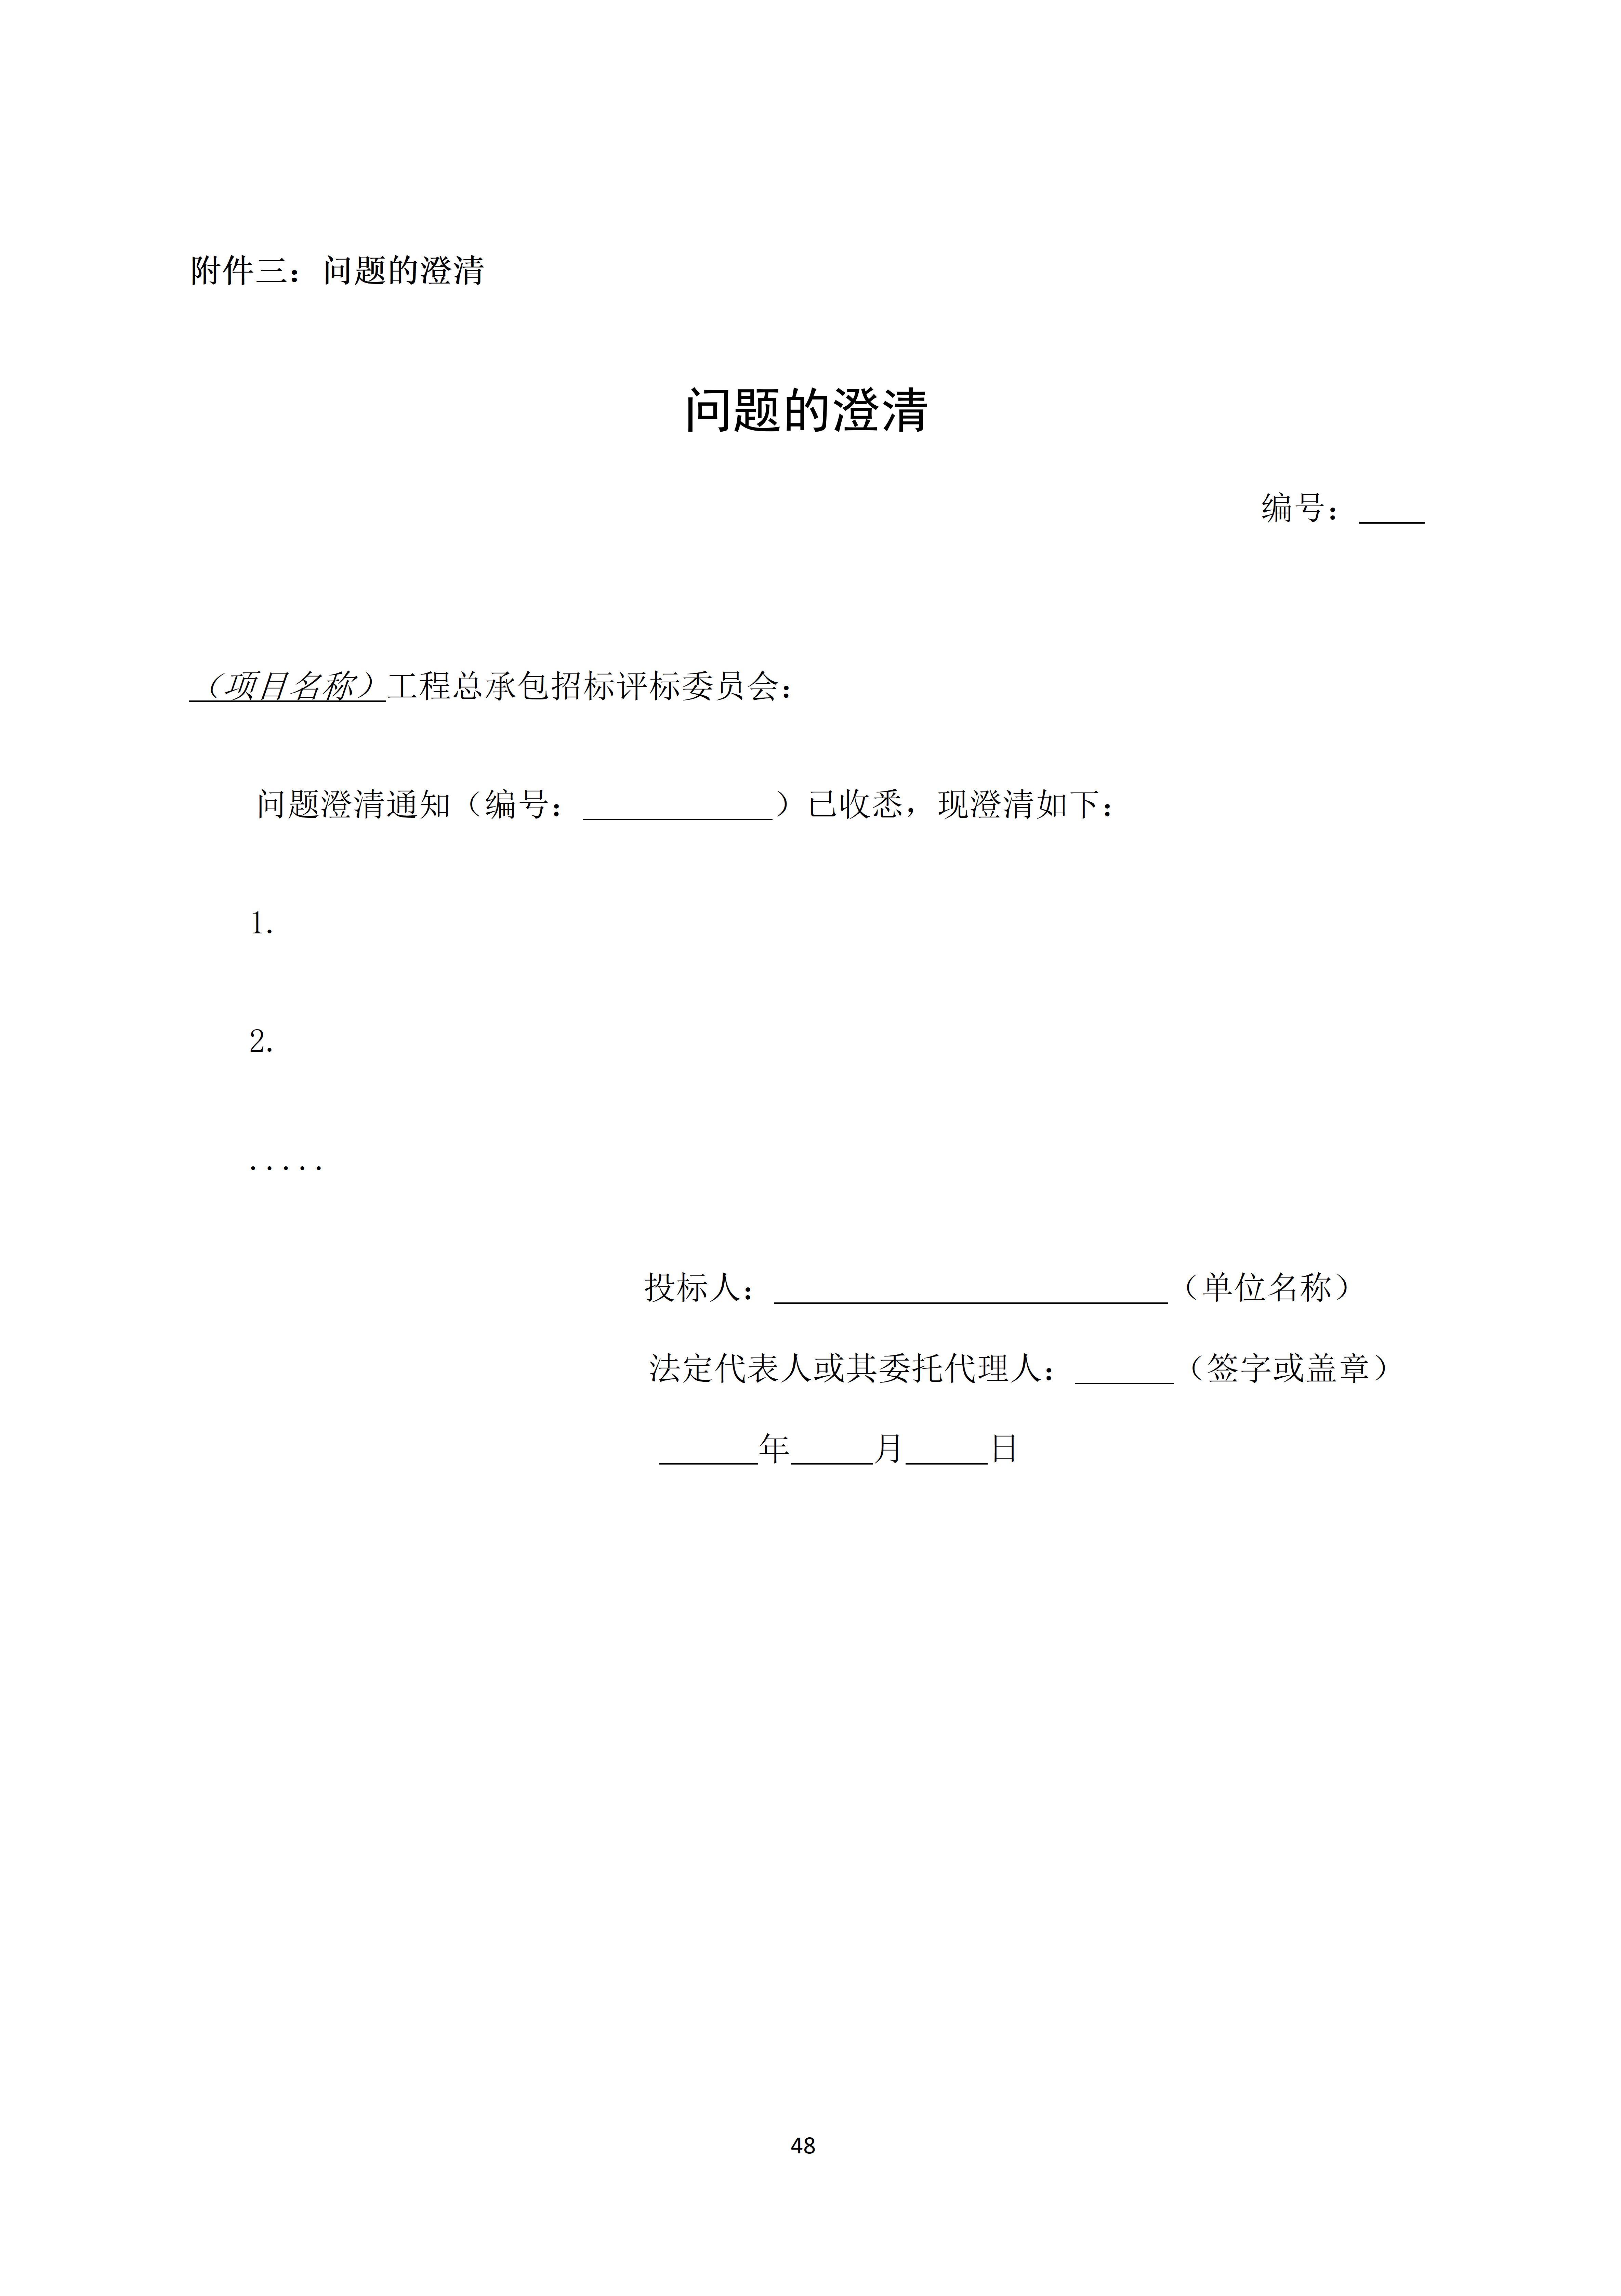 浙江发布房屋建筑和市政基础设施工程总承包招标文件示范文本(2022版)